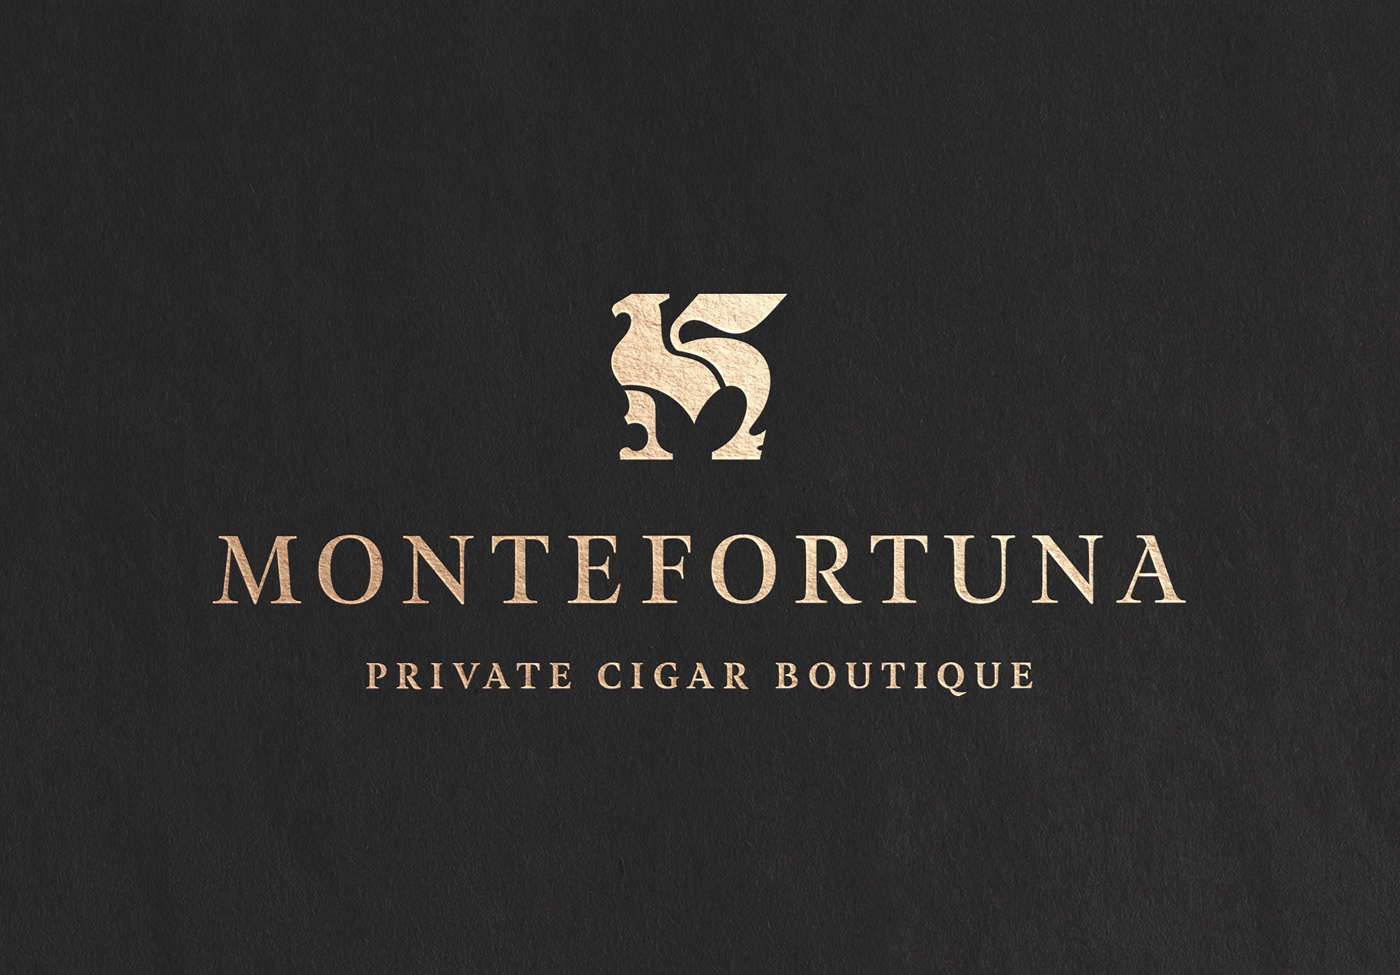 Private luxury exclusive elegant branding  identity